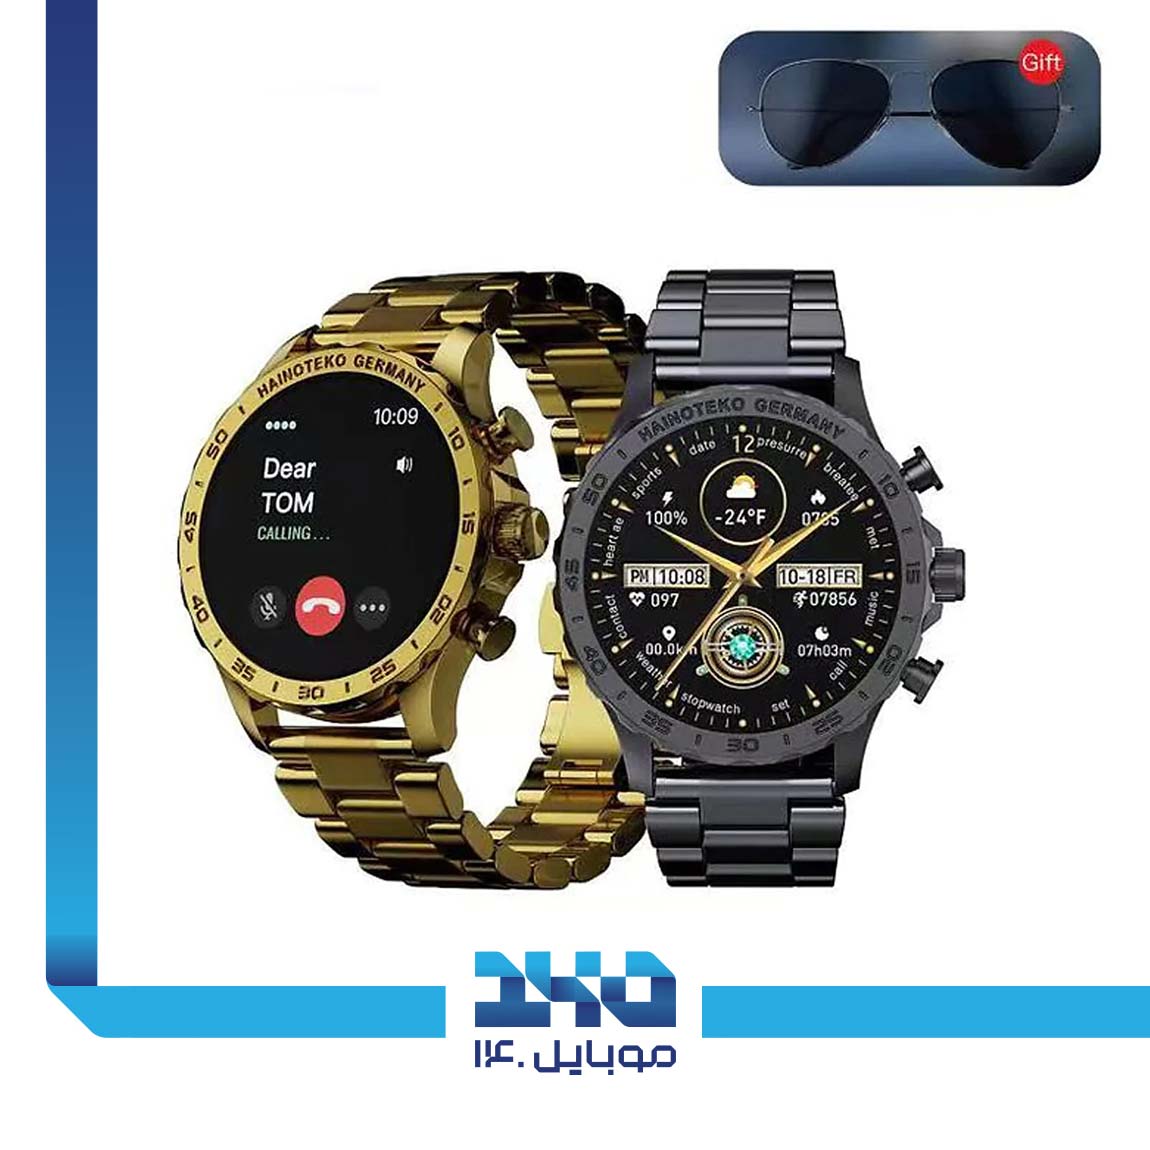 HainoTeko G12 Max Smart Watch 2